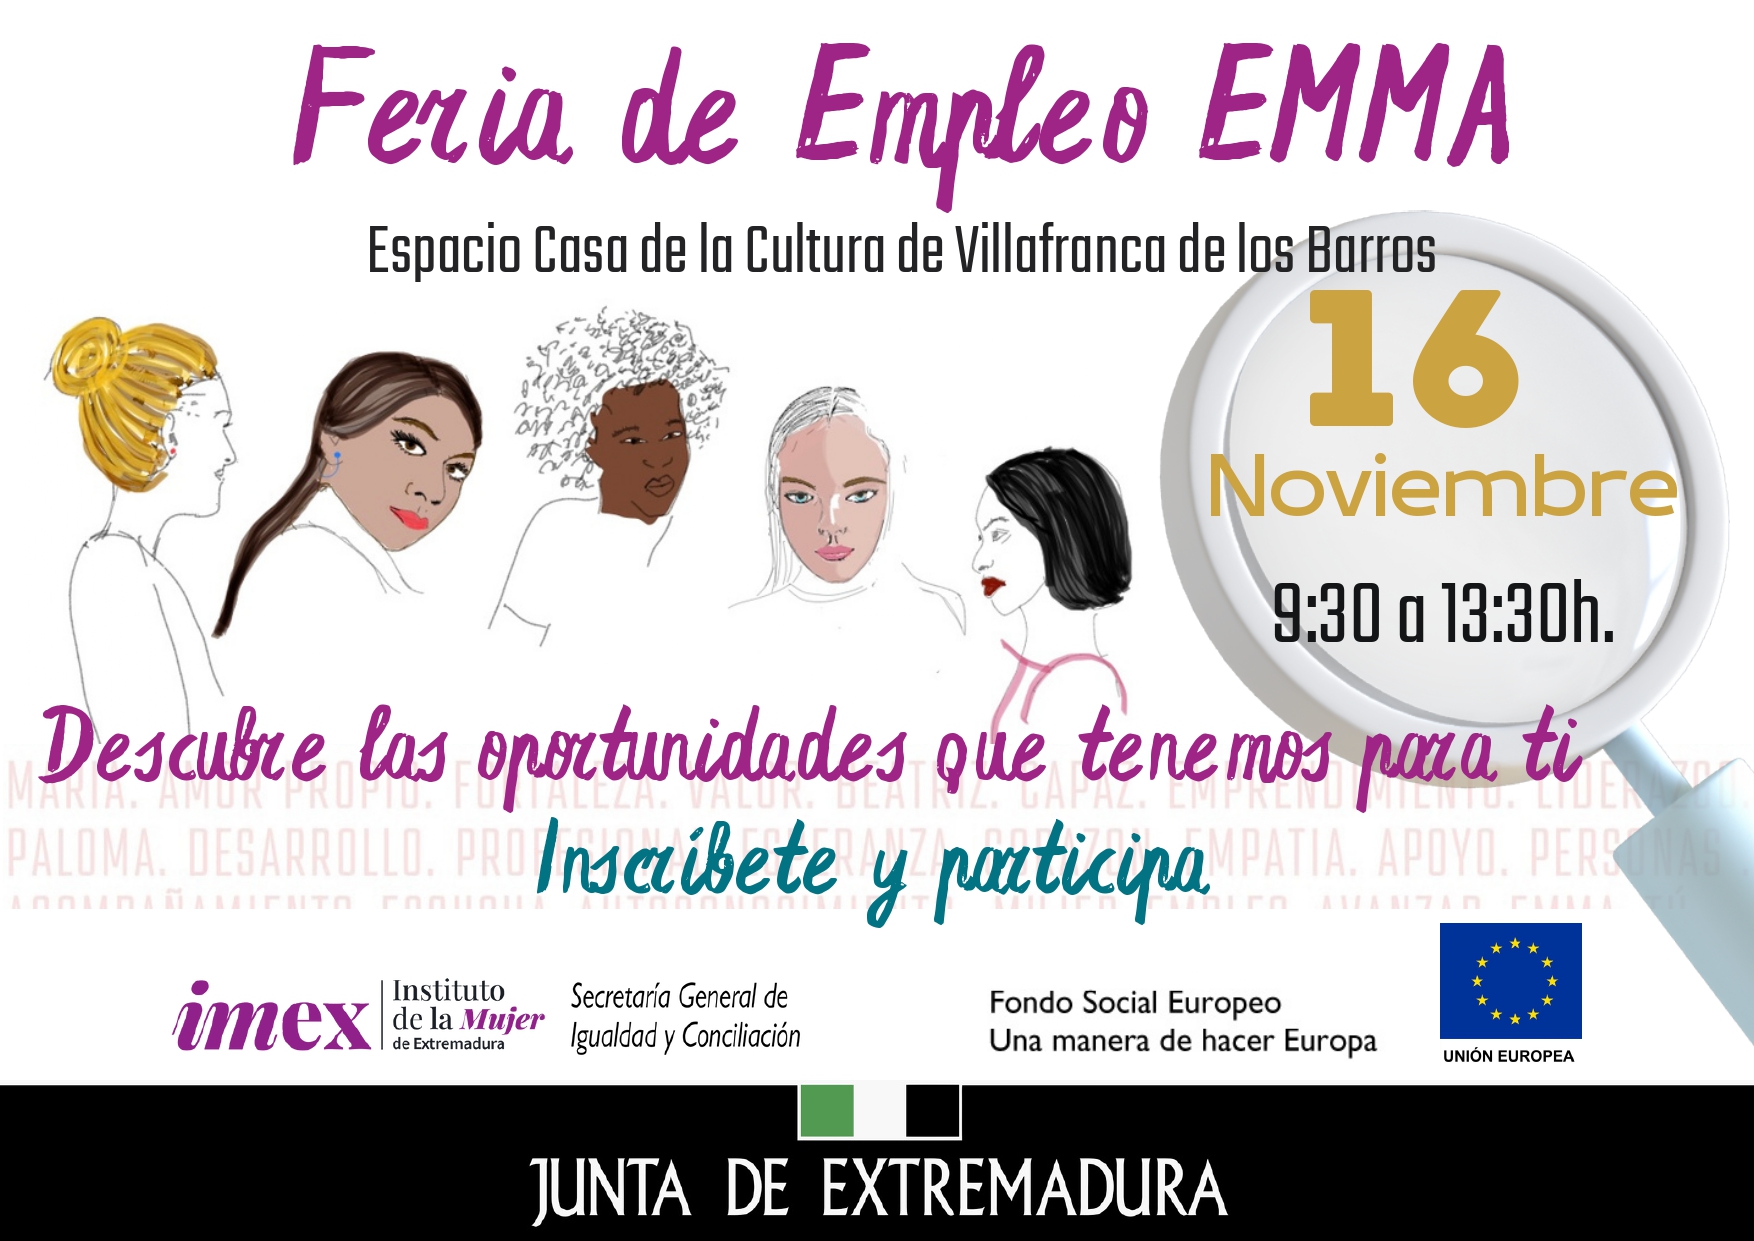 Imagen del artículo El IMEX organiza la Feria de Empleo EMMA para ofrecer oportunidades a colectivos vulnerables